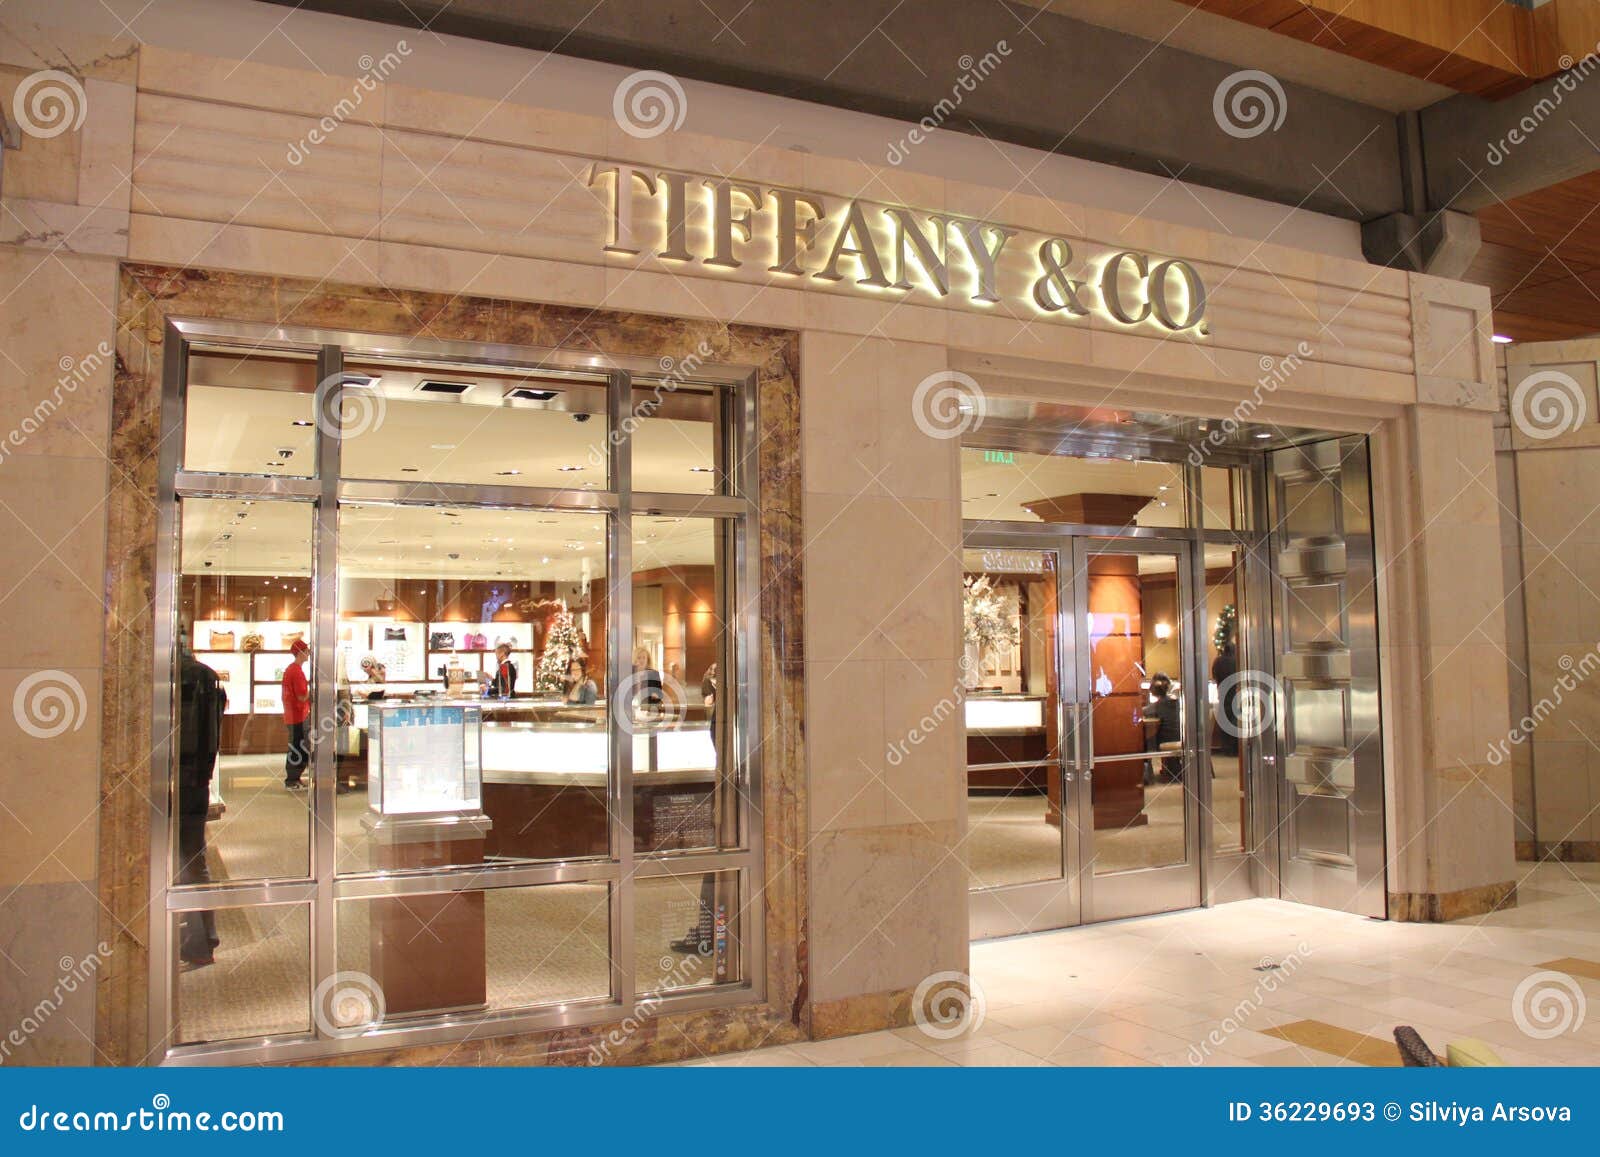 the tiffany store